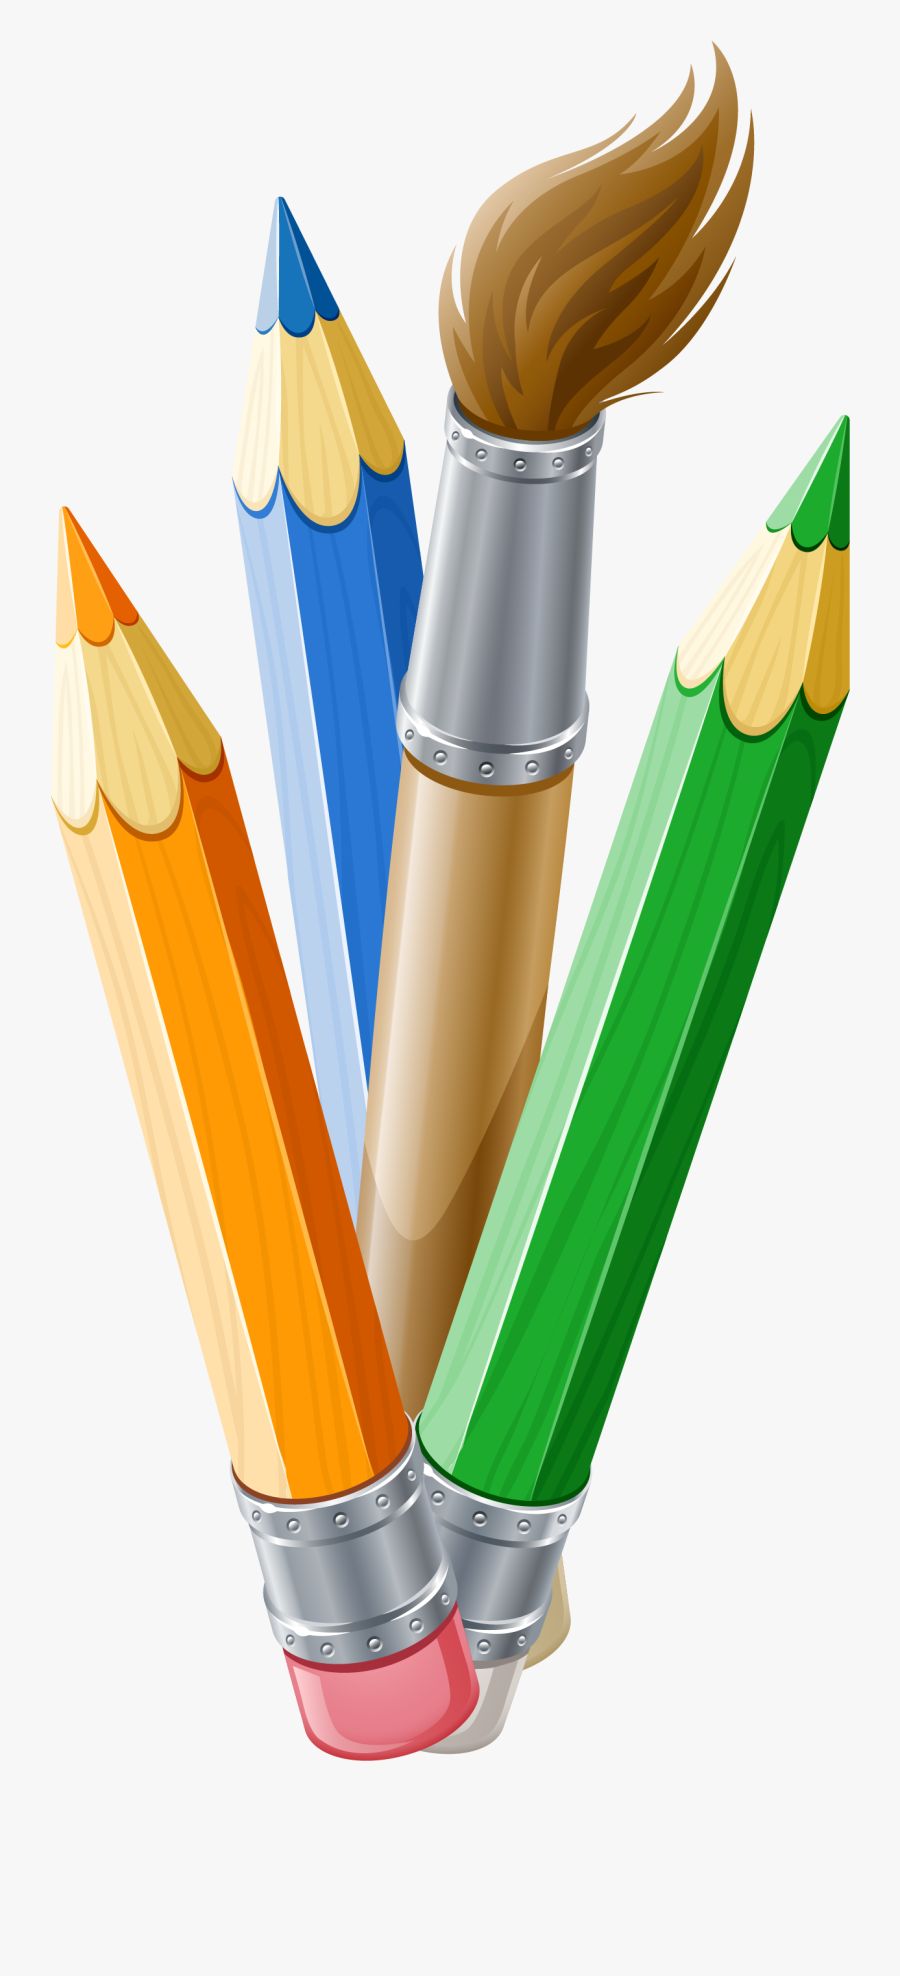 Paint Brush Clipart Pen Pencil - Paintbrush And Pencil Clip Art, Transparent Clipart